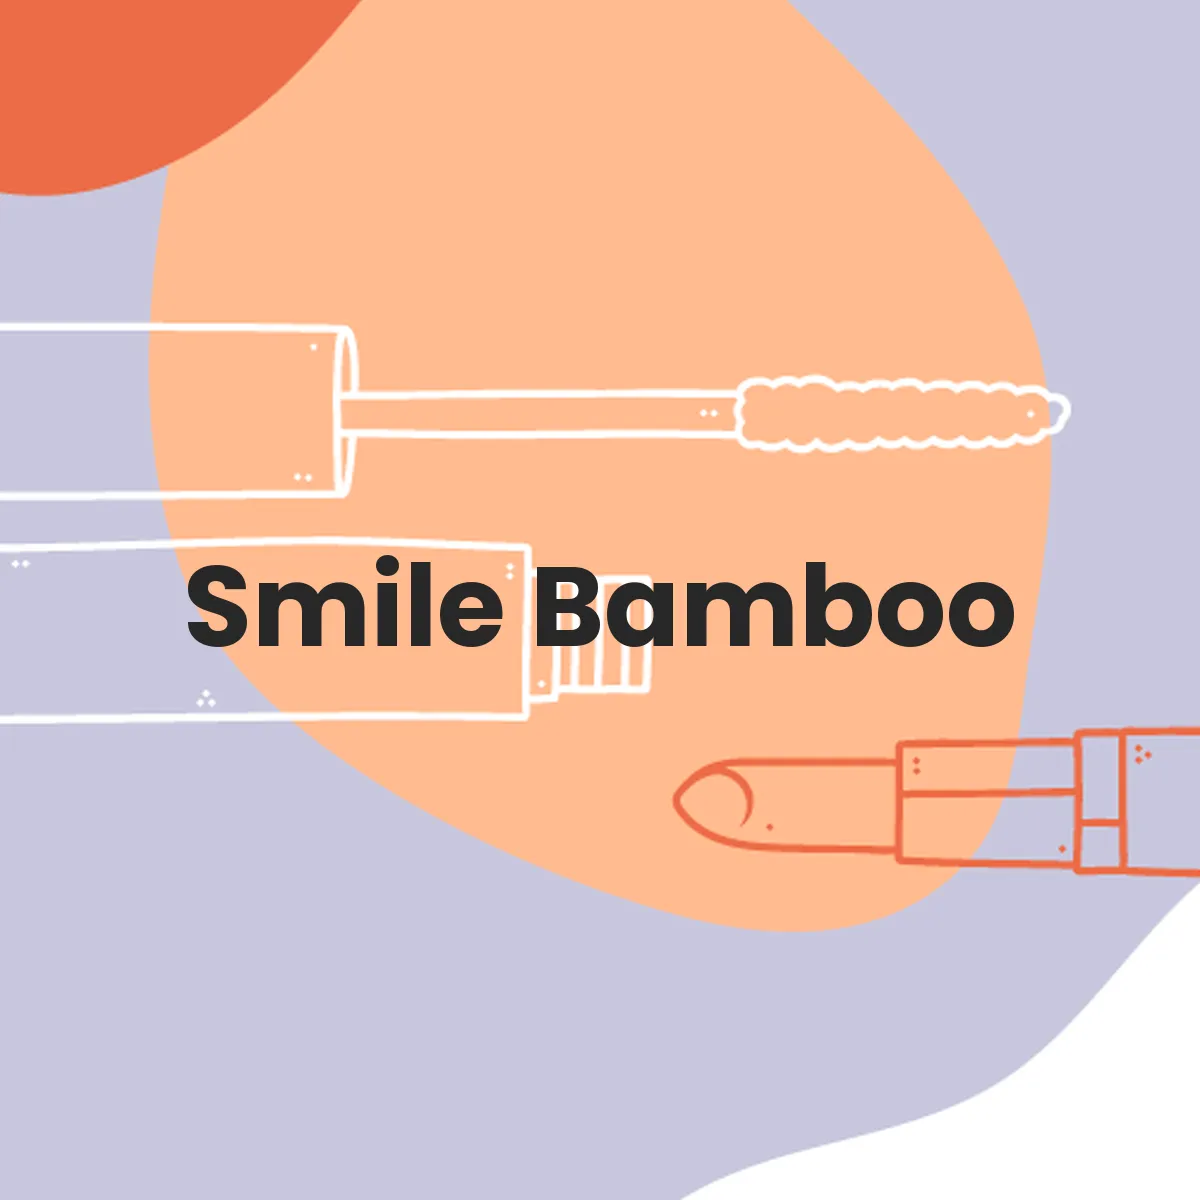 Smile Bamboo testa en animales?